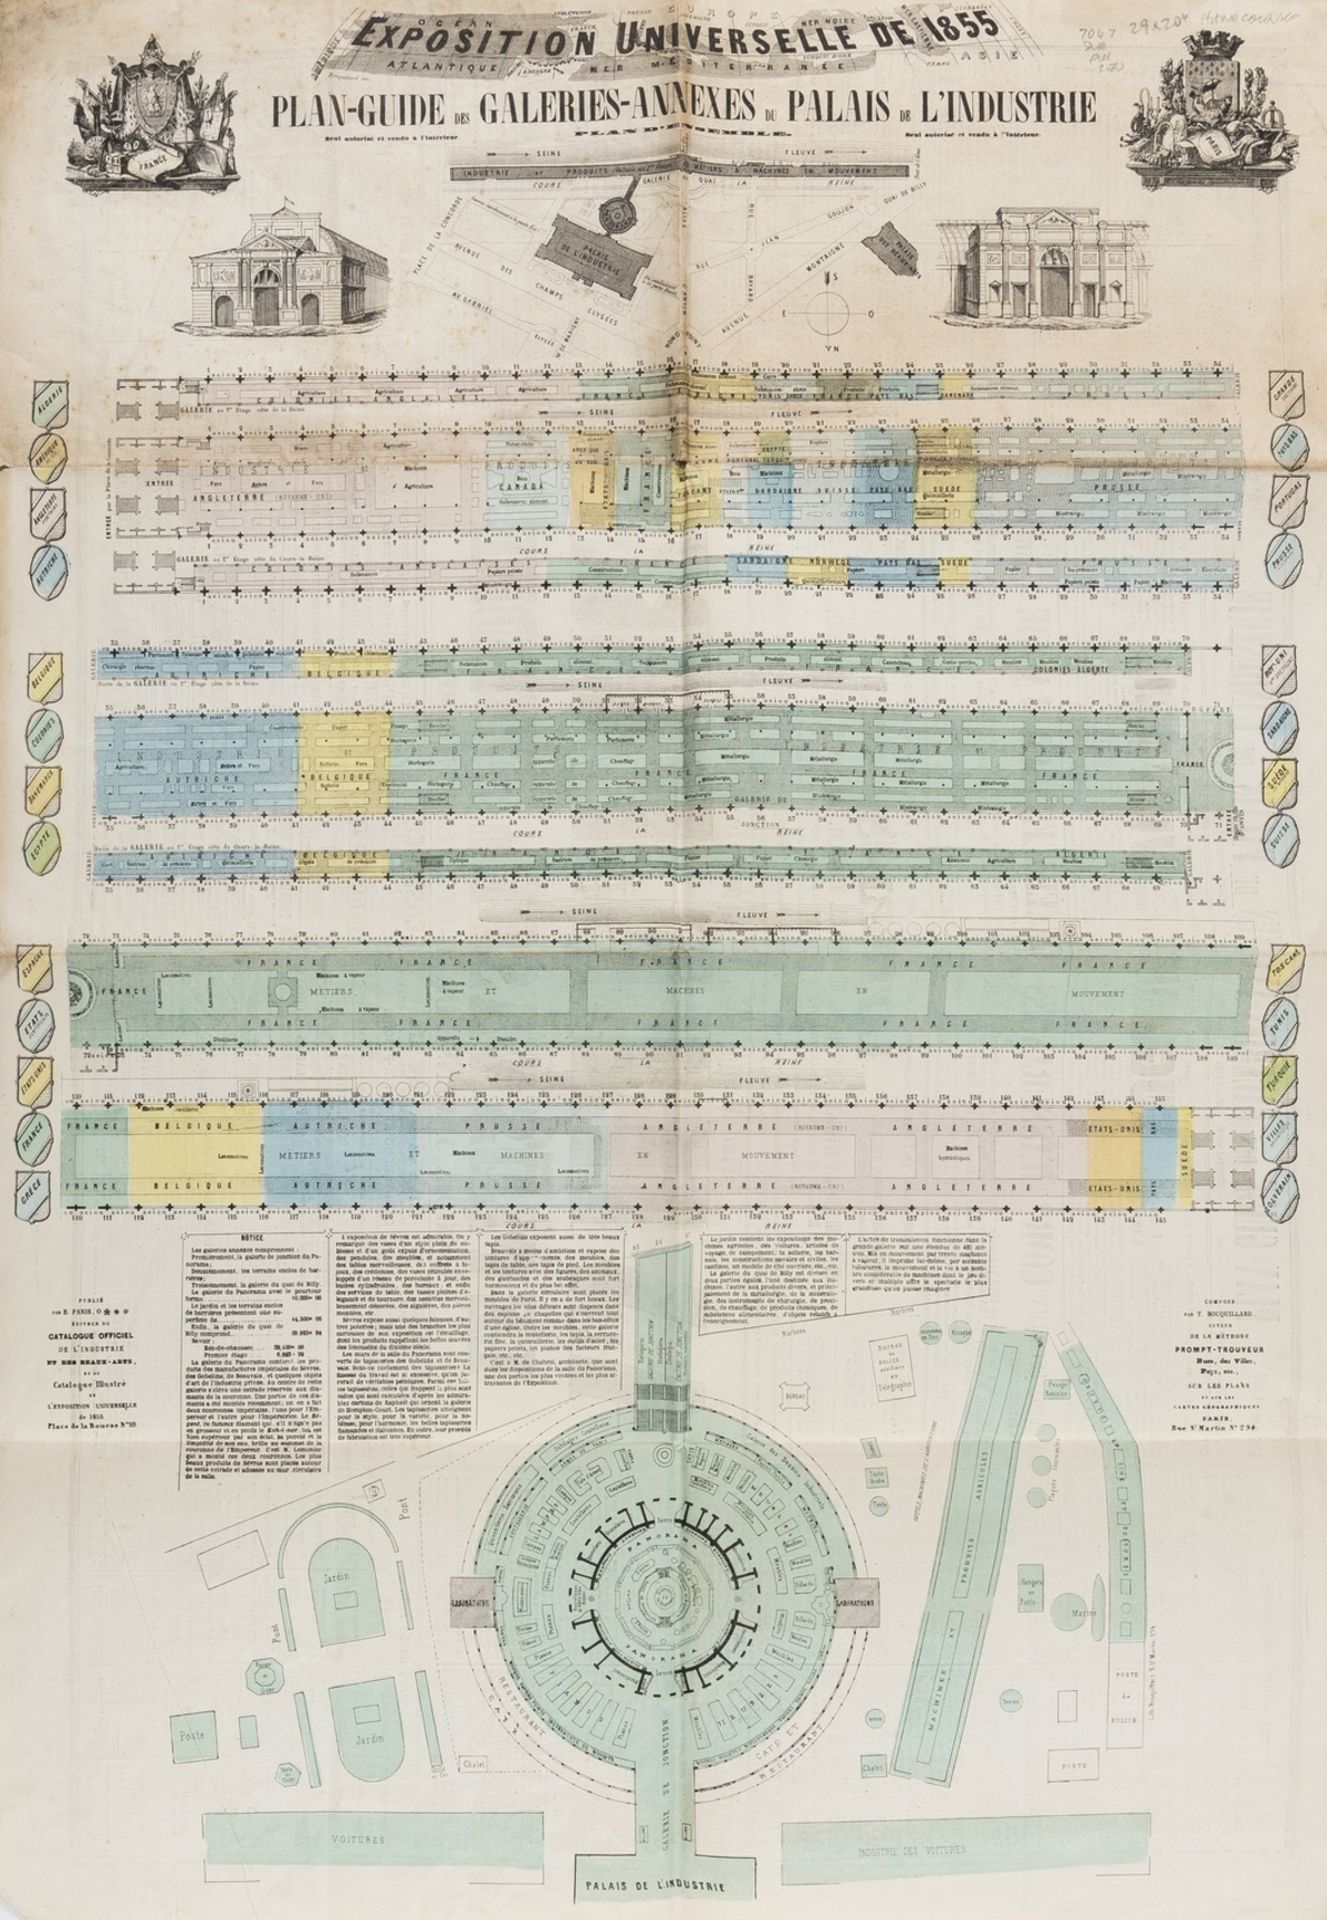 Paris.- Exposition Universelle de 1855: Plan-Guide des Galleries-Annexes du Palais de …